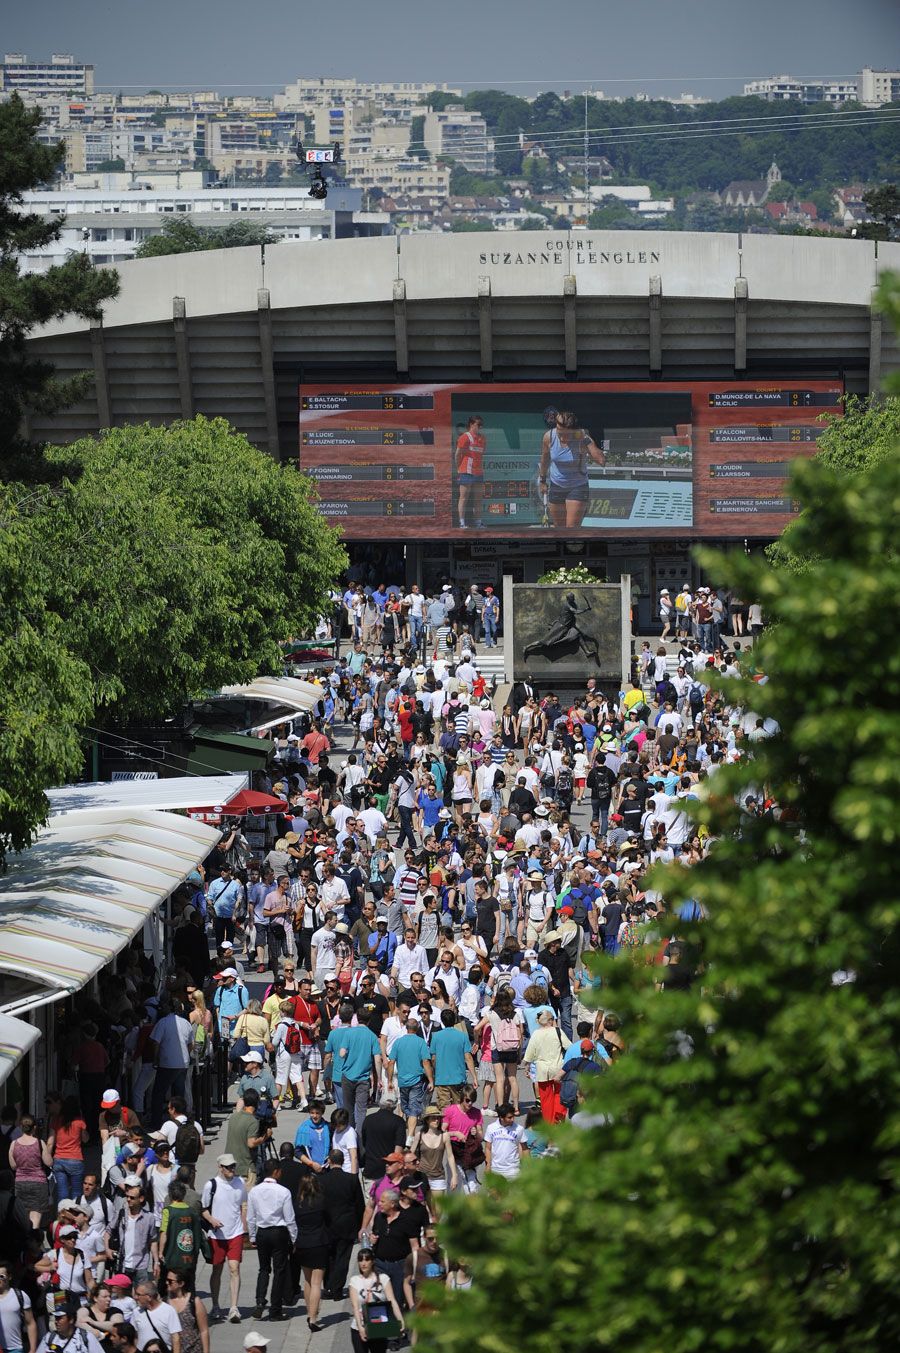 Crowds arrive at Roland Garros